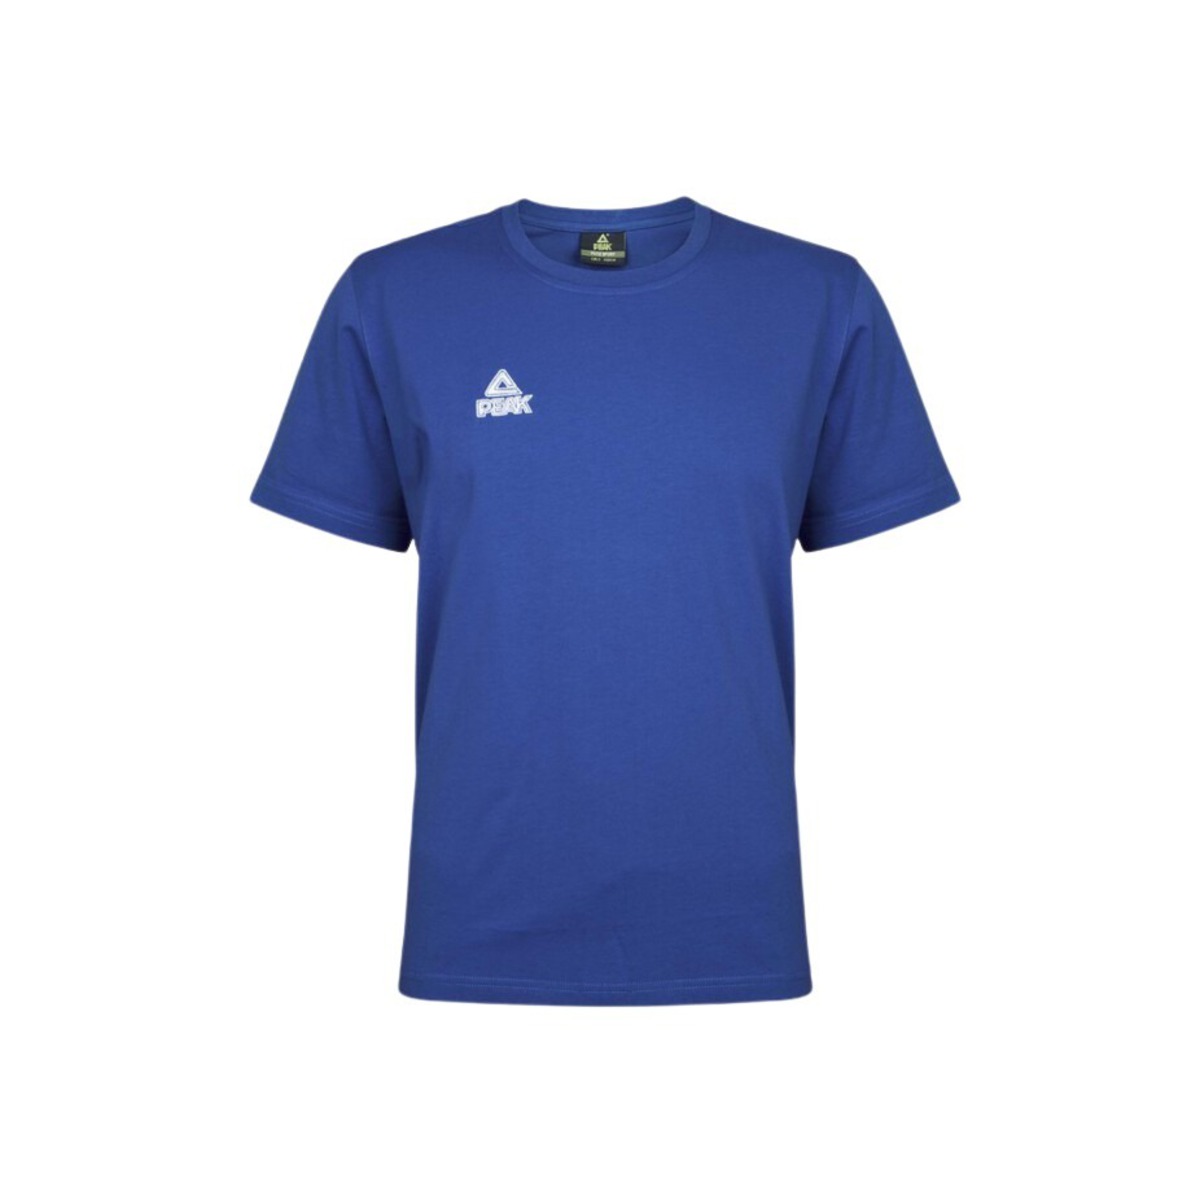 Camiseta Peak Classic - azul - 